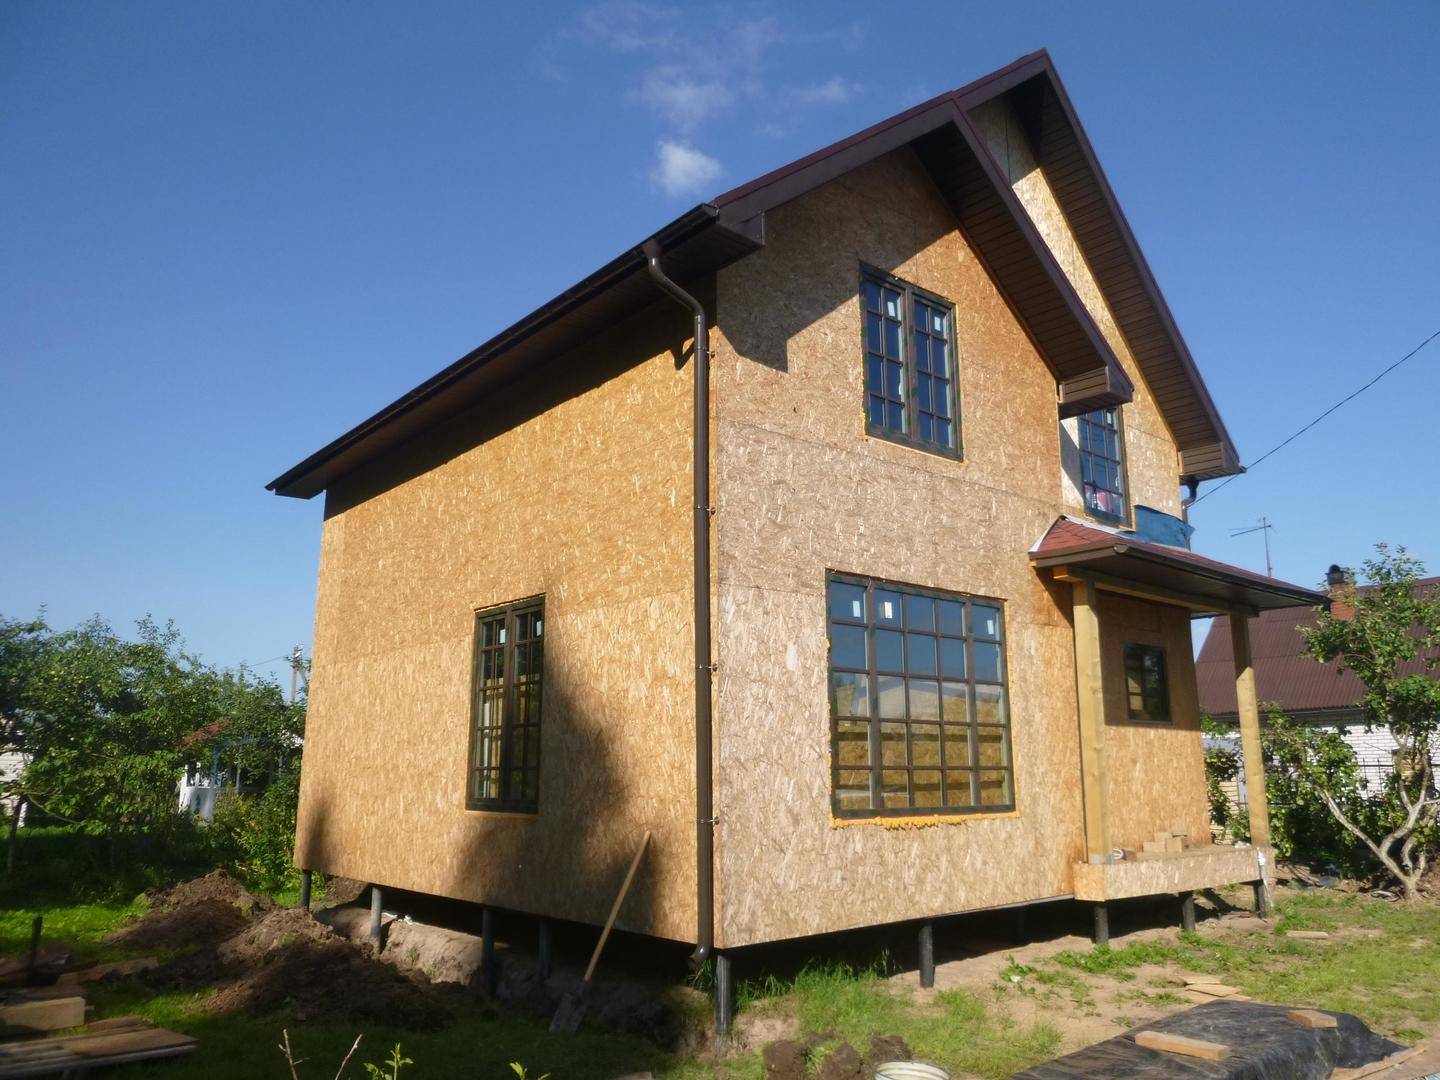 Отделка фасада каркасного дома: чем можно обшить дом, материалы, их варианты и виды